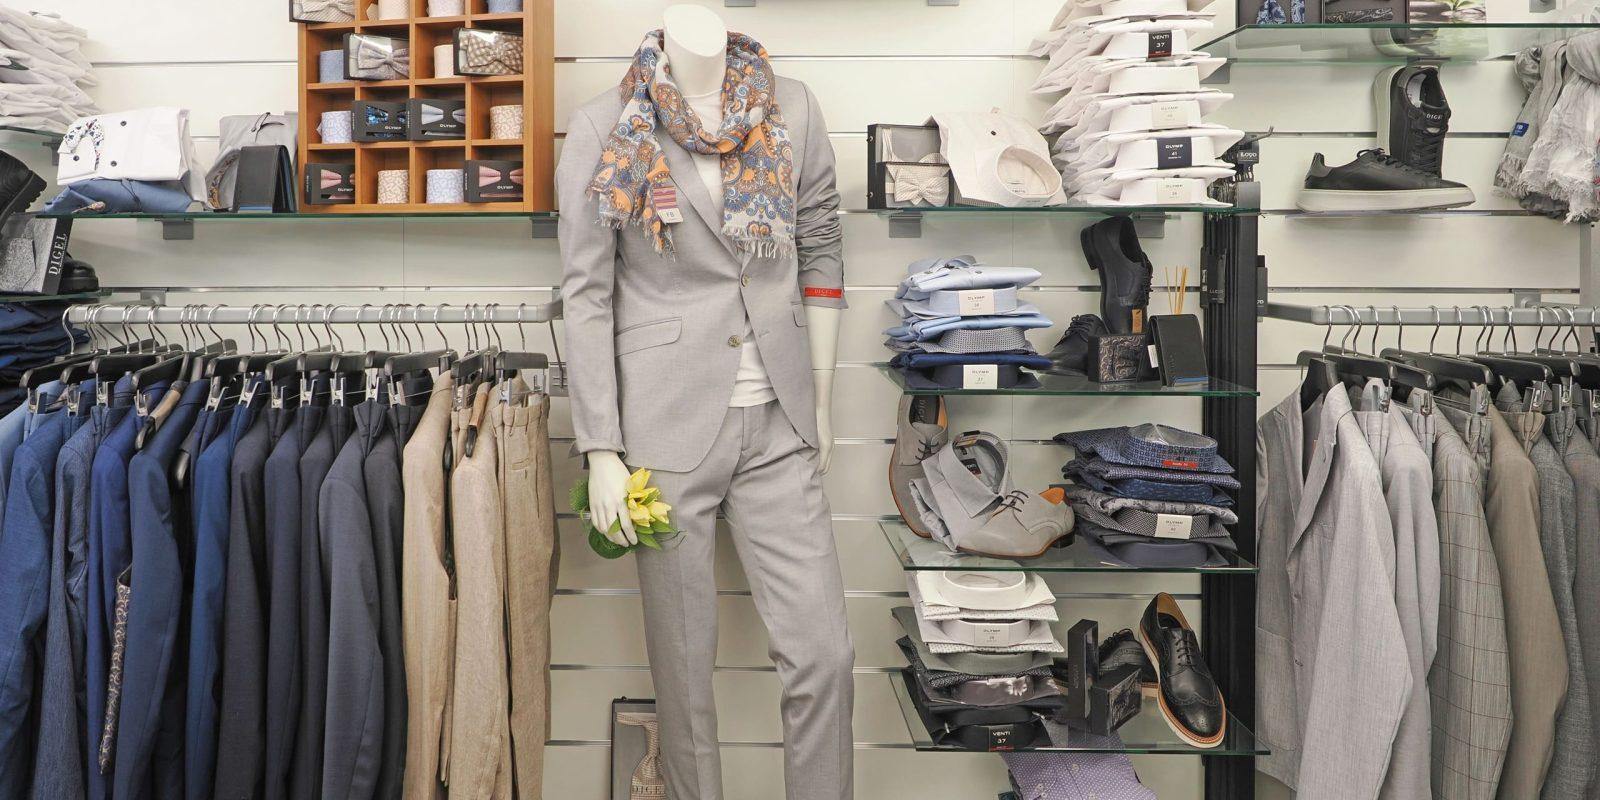 bekleidung Shop Mann Frau Kind Locarno Kleiderladen Bekleidungsgeschäft